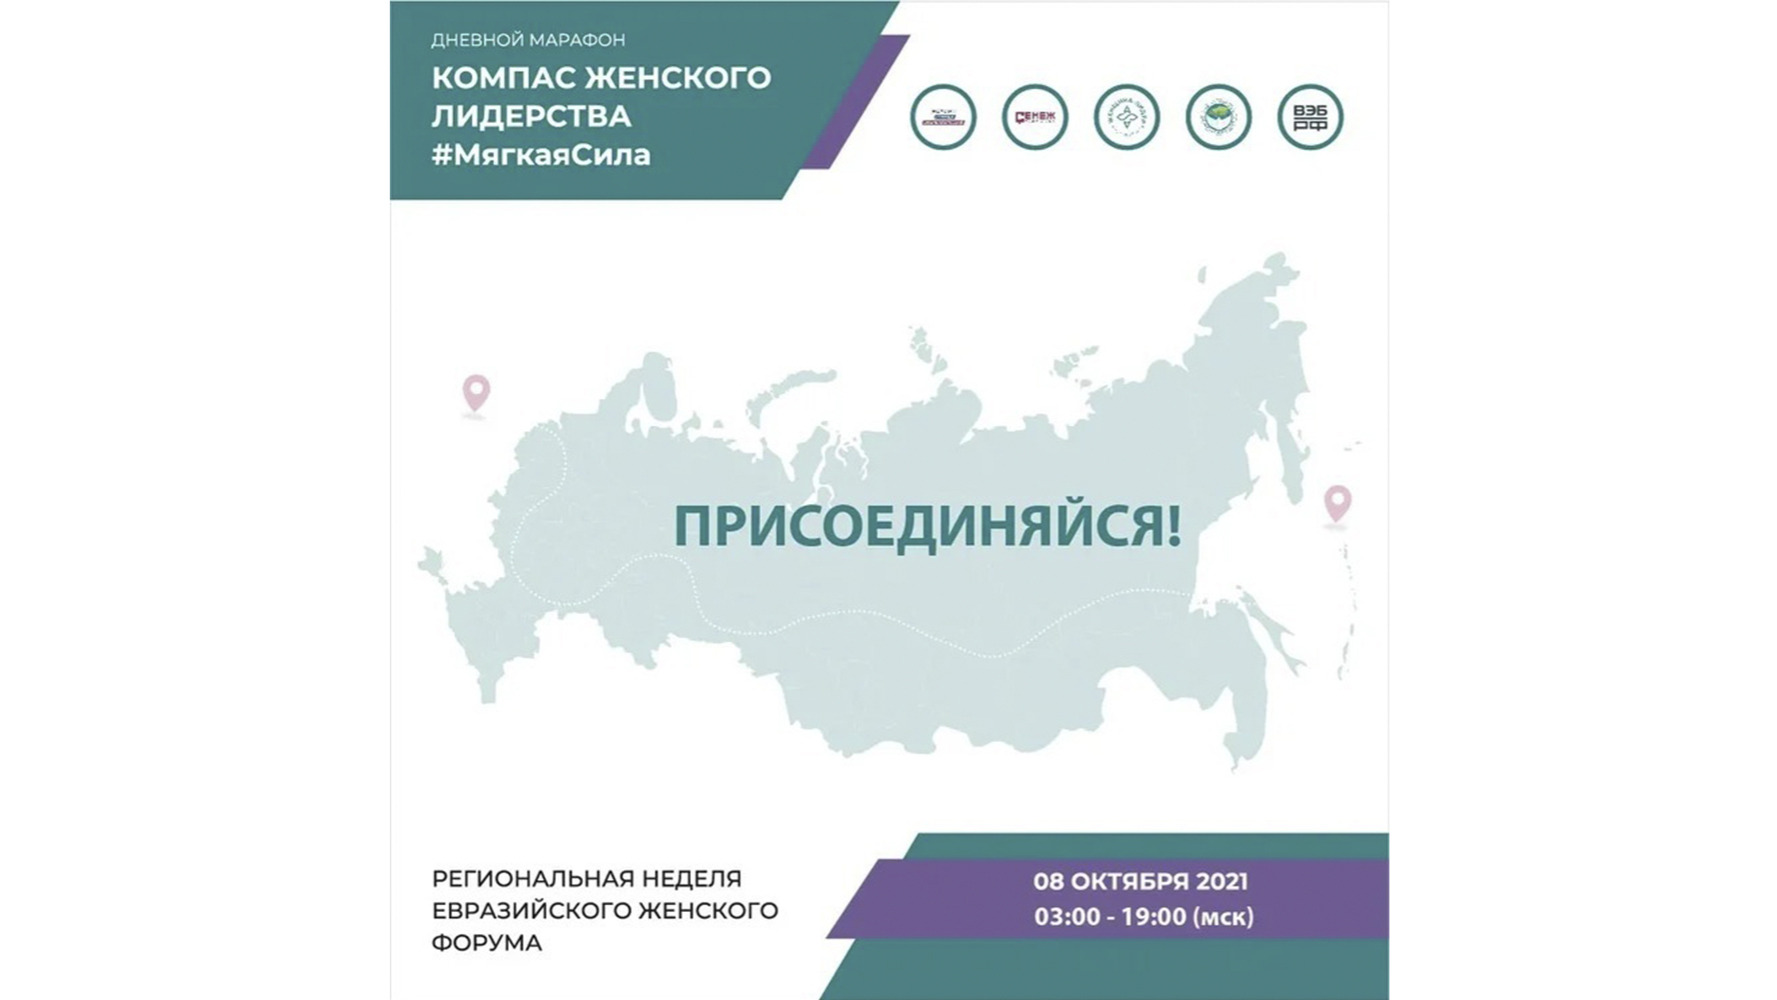 В России 8 октября стартует 17-часовой марафон по женскому лидерству накануне Евразийского женского форума